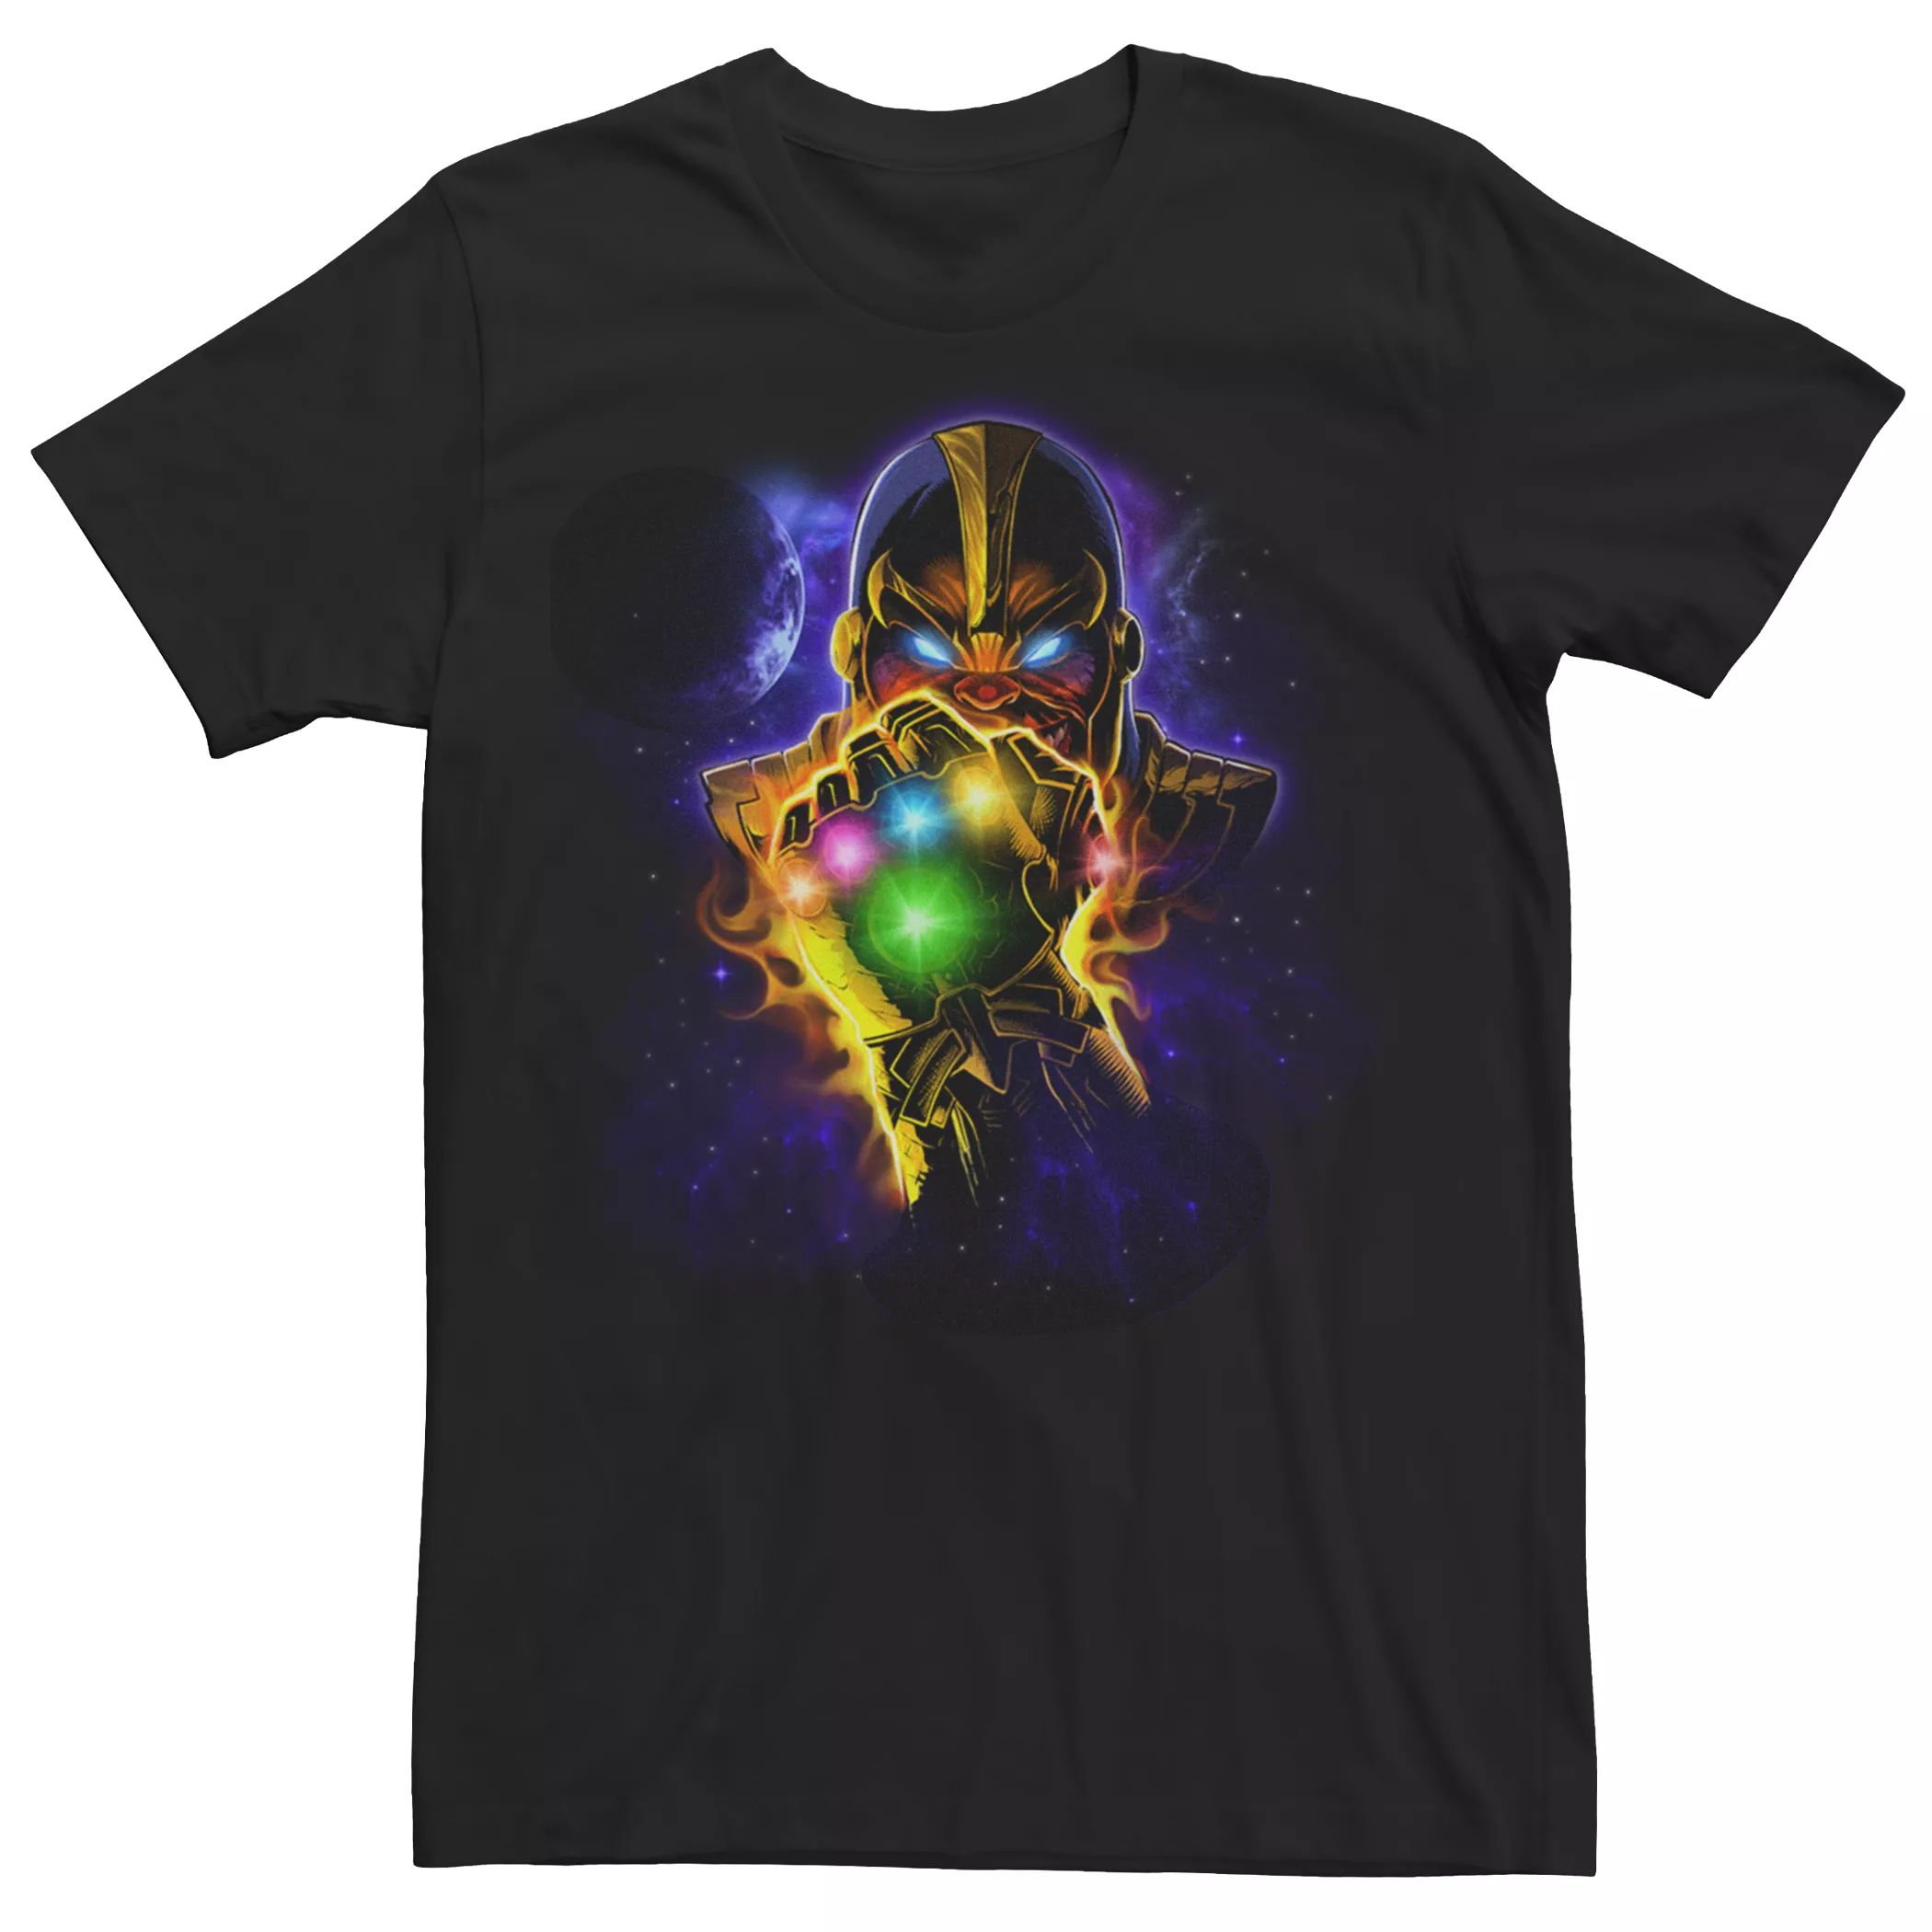 Мужская футболка Marvel Avengers Thanos Licensed Character